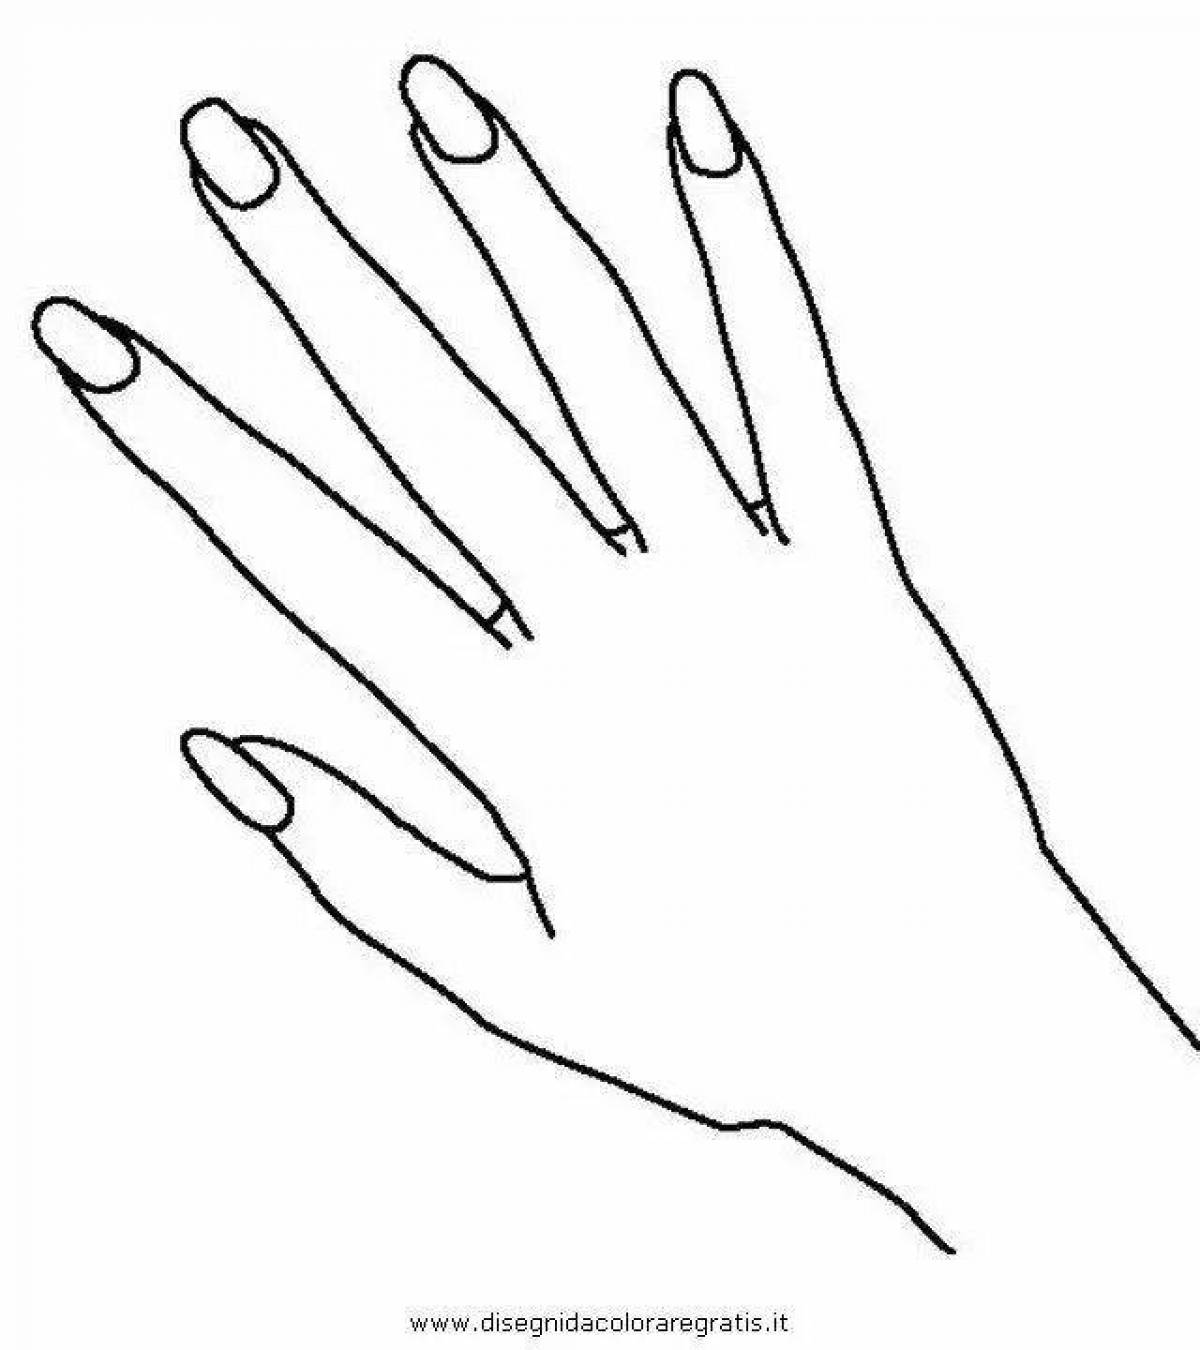 Раскраска украшенная рука с длинными ногтями